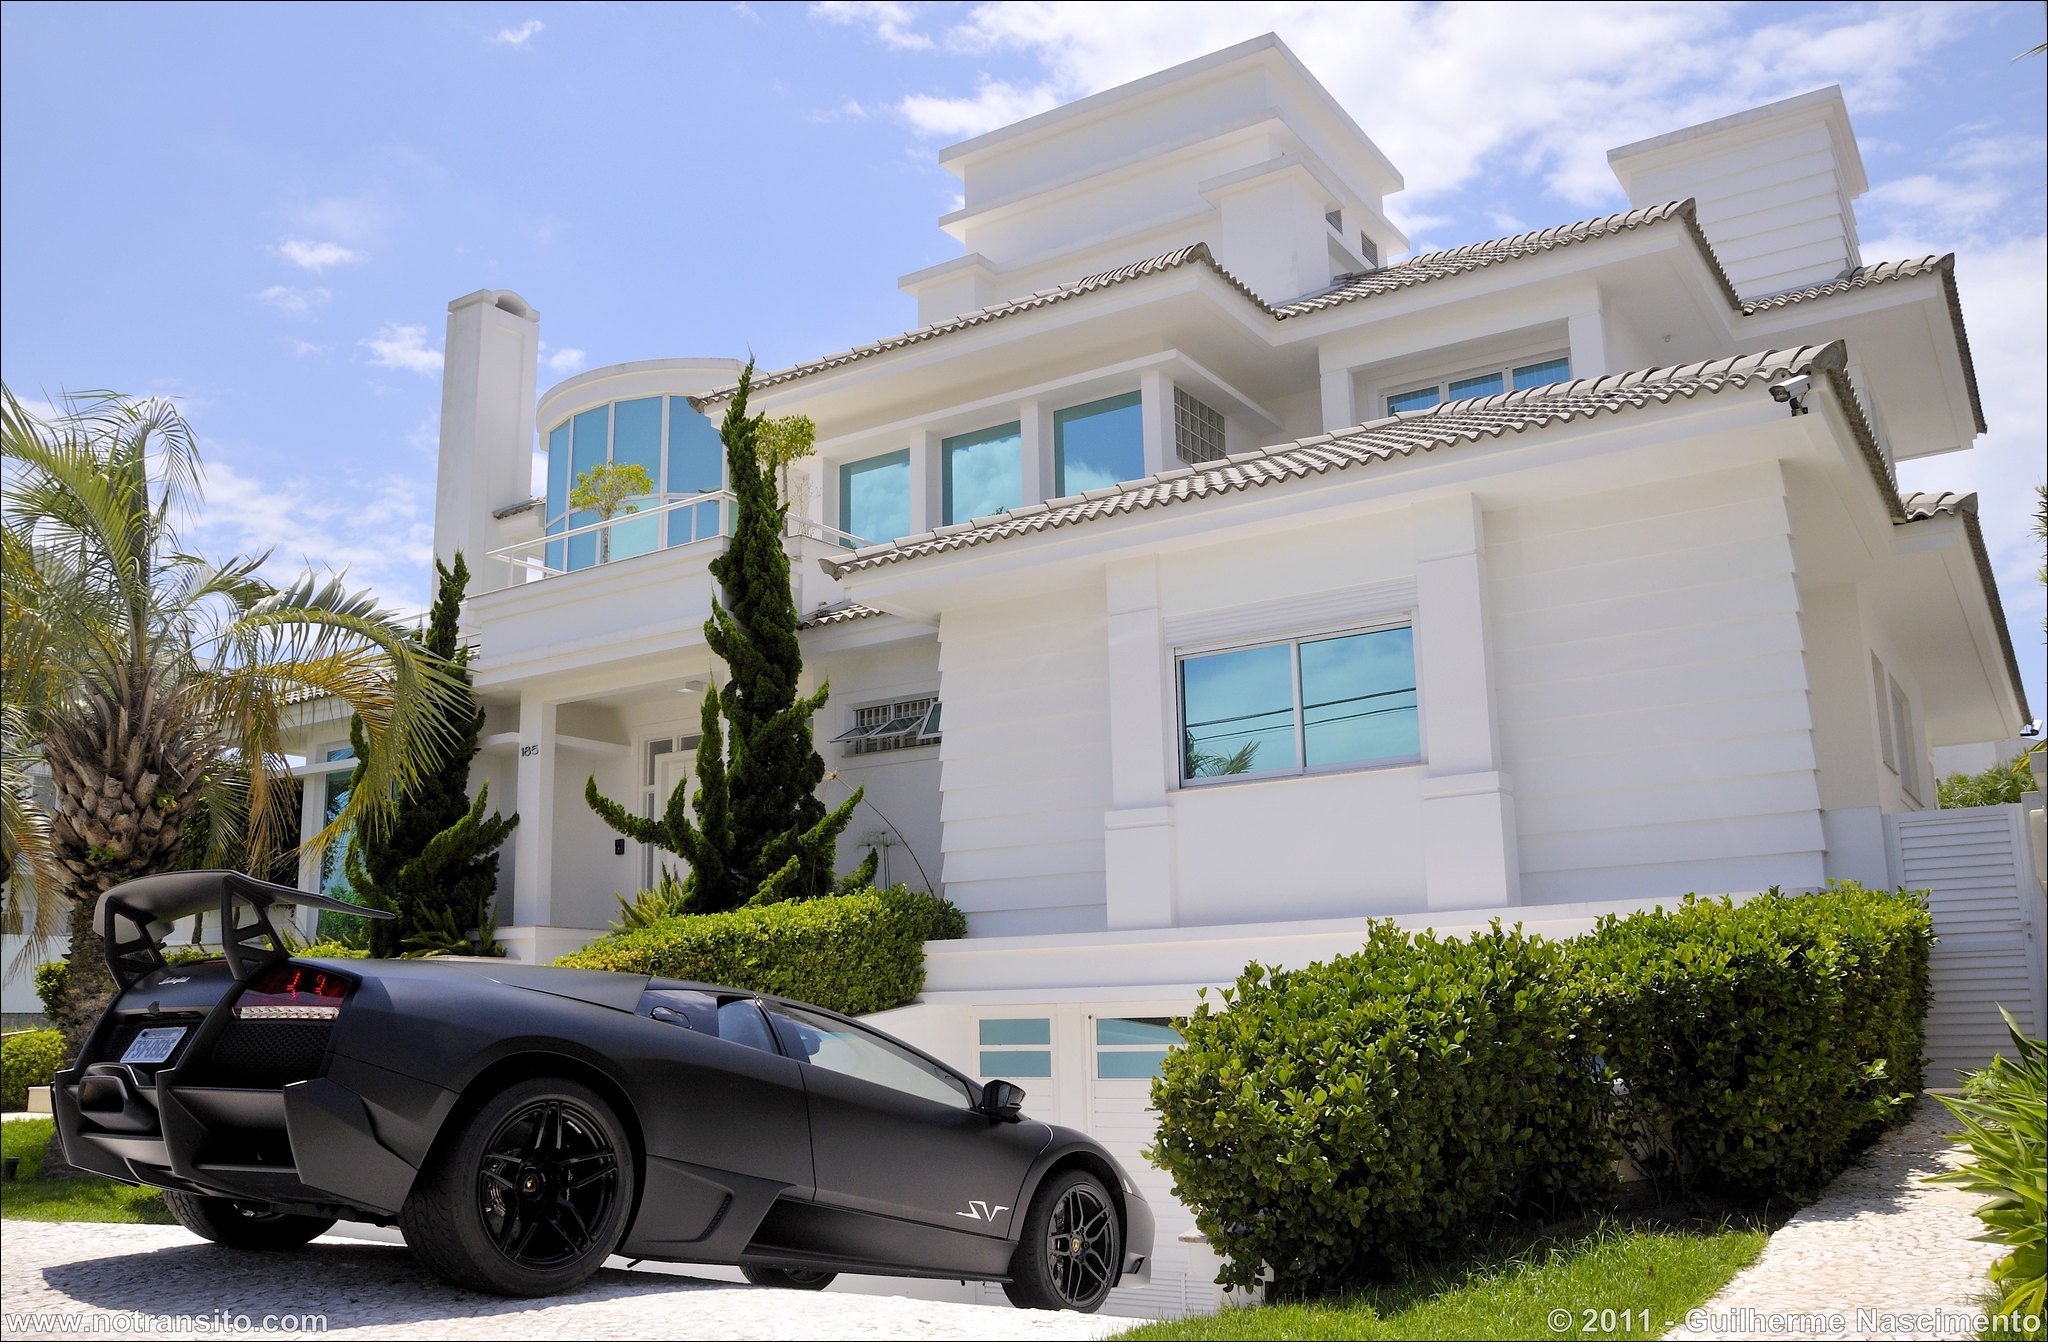 Машино дома. Богатая жизнь. Богатый дом. Красивый дом с машиной. Роскошный особняк с машиной.